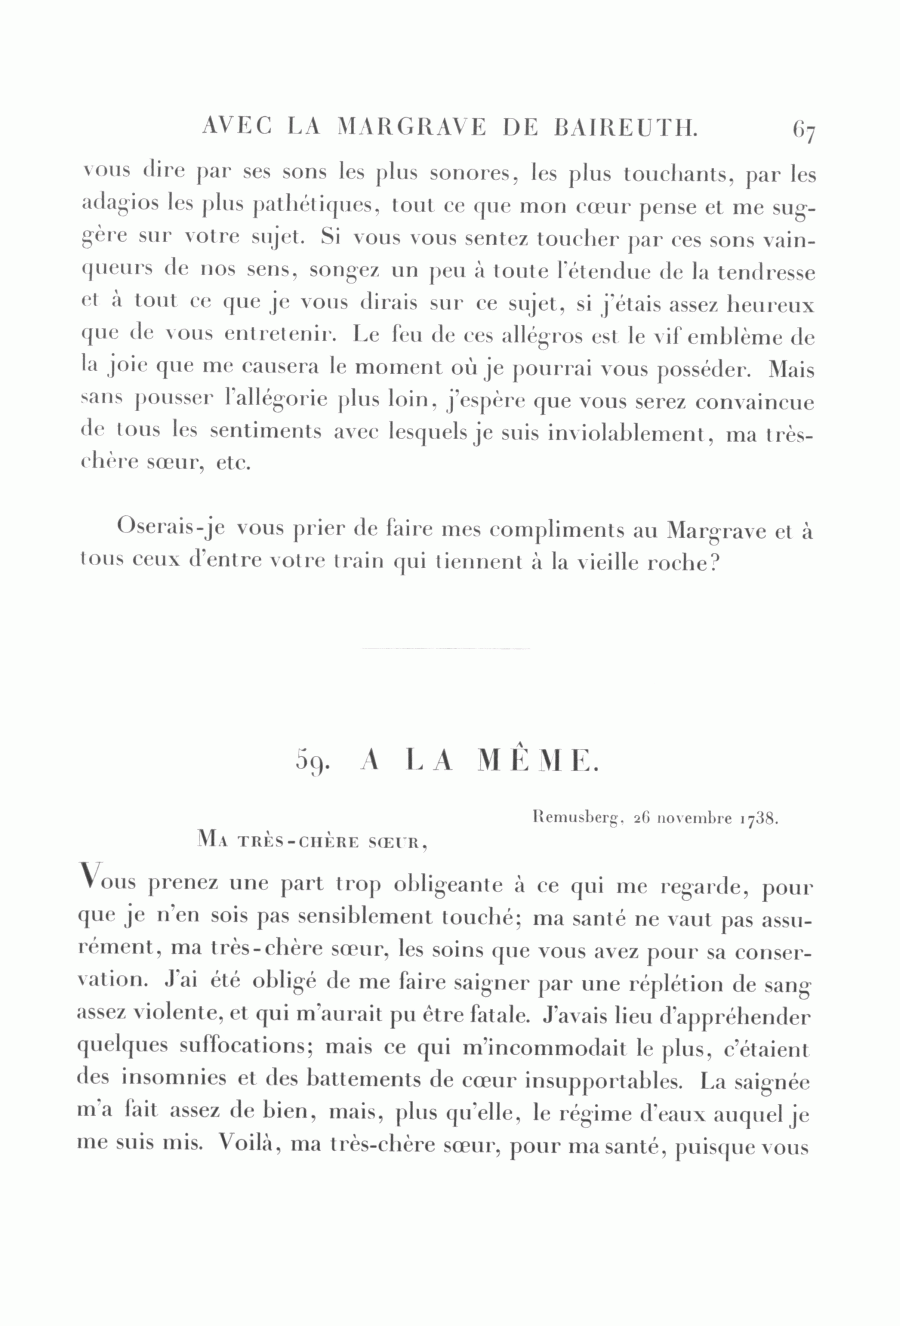 S. 67, Obj. 2